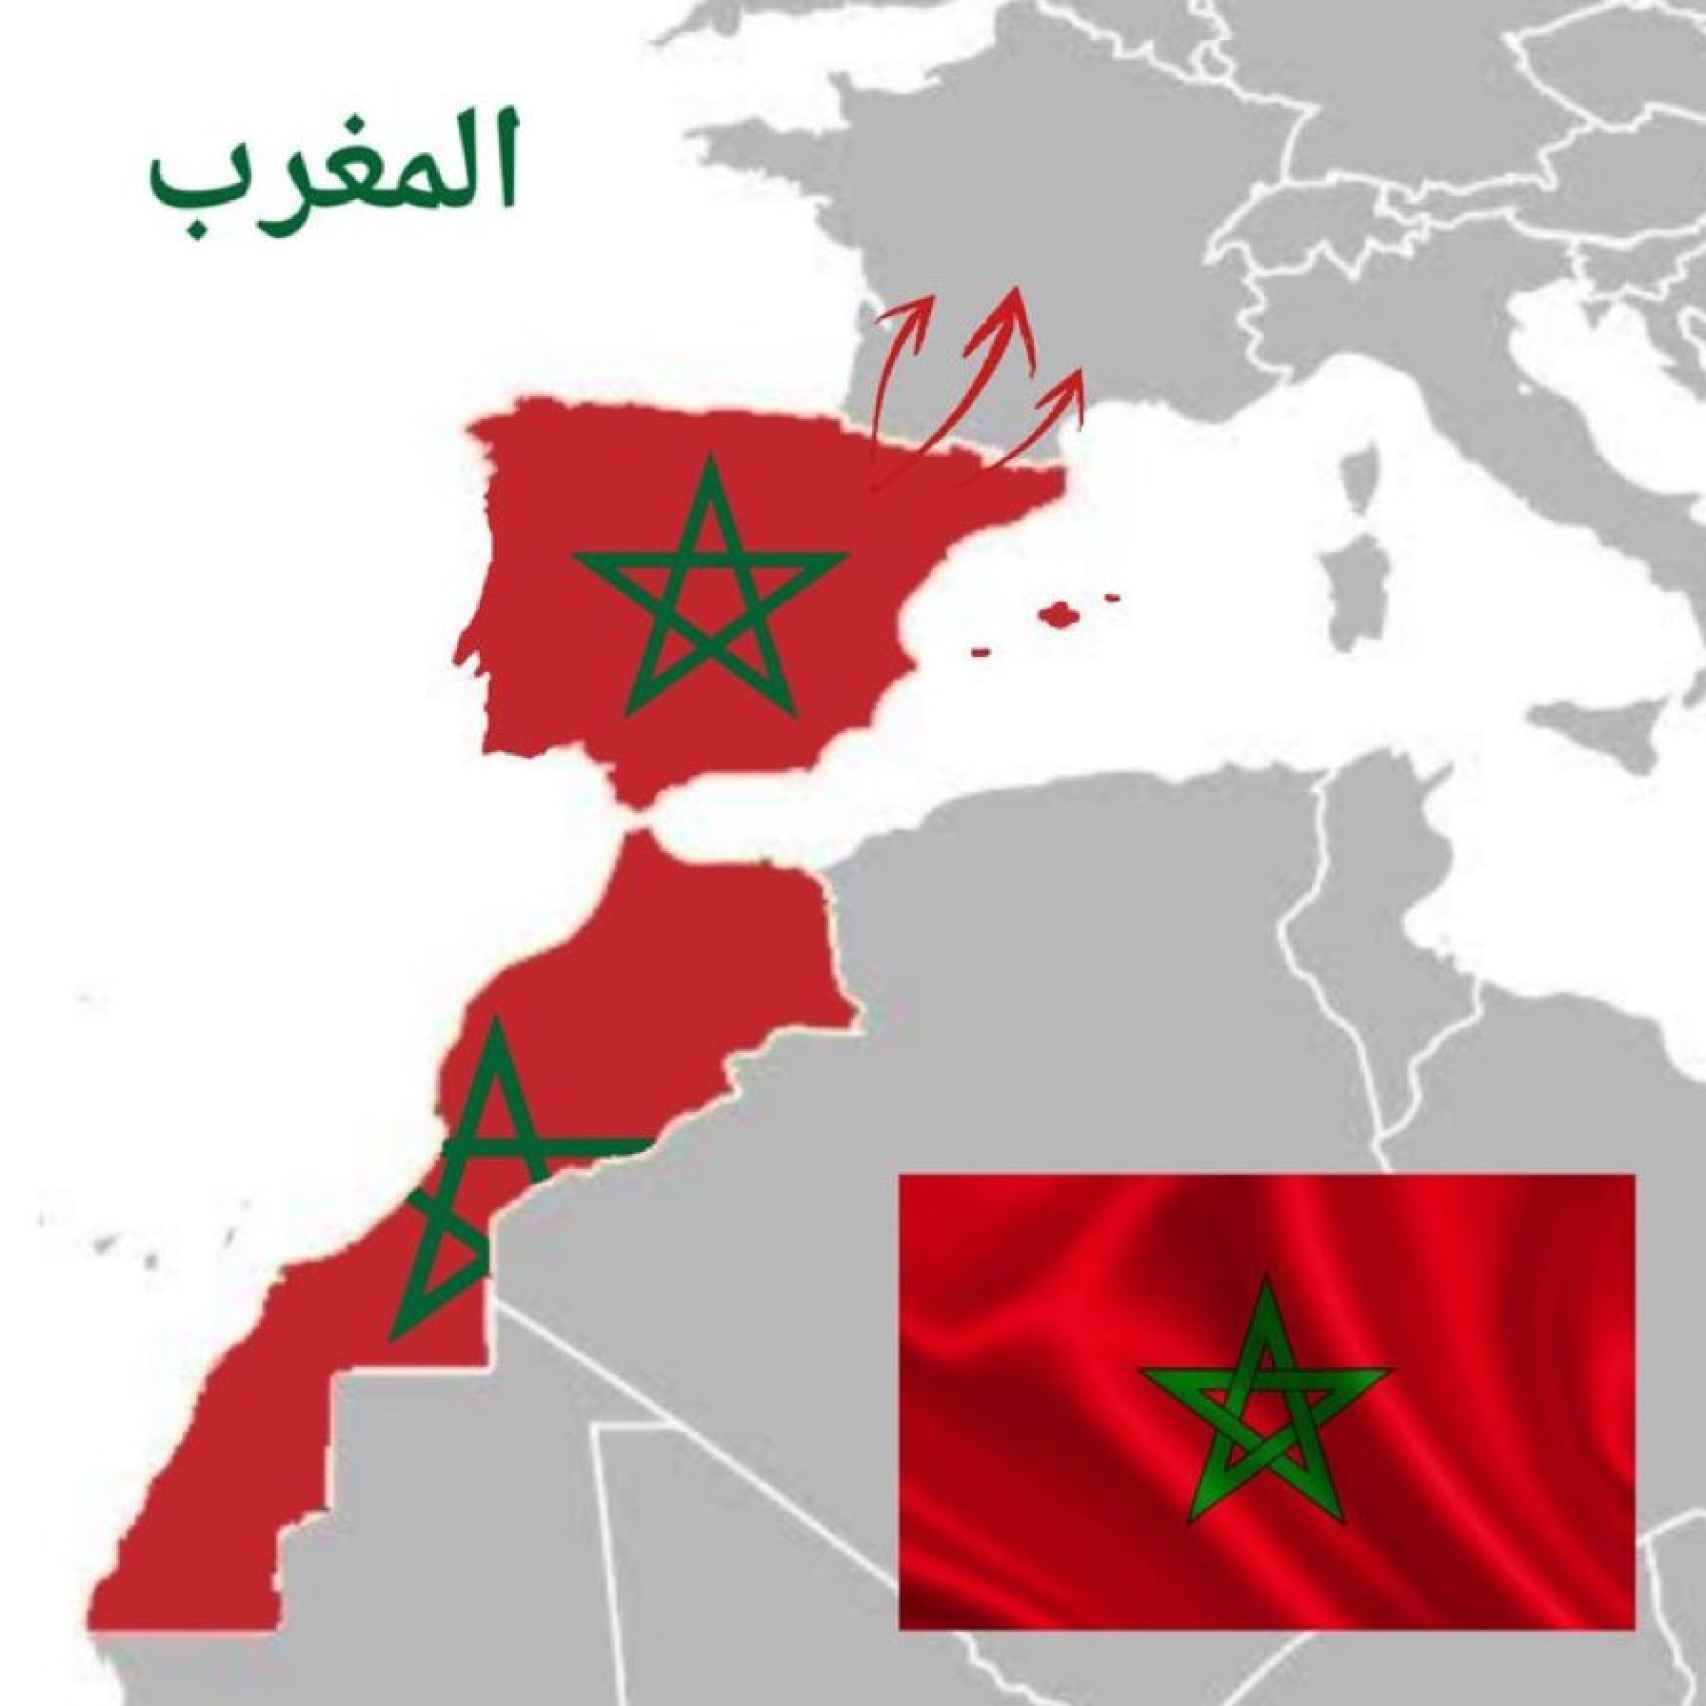 Une des cartes expansionnistes du Maroc circulant sur les réseaux sociaux.